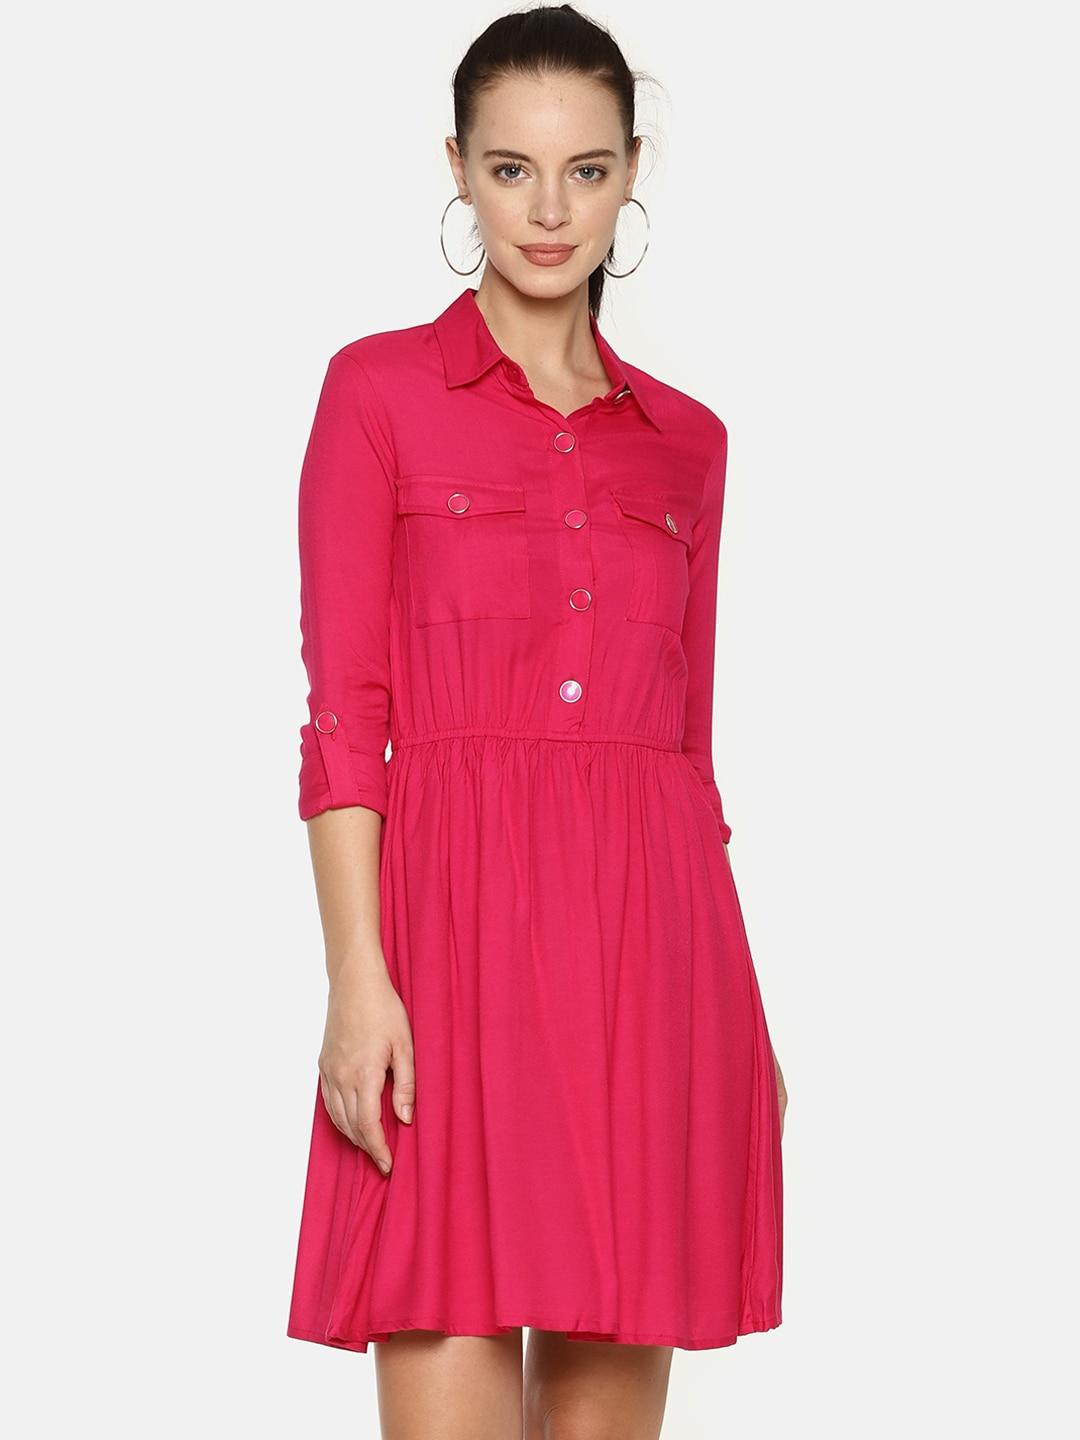 aara women pink solid shirt dress